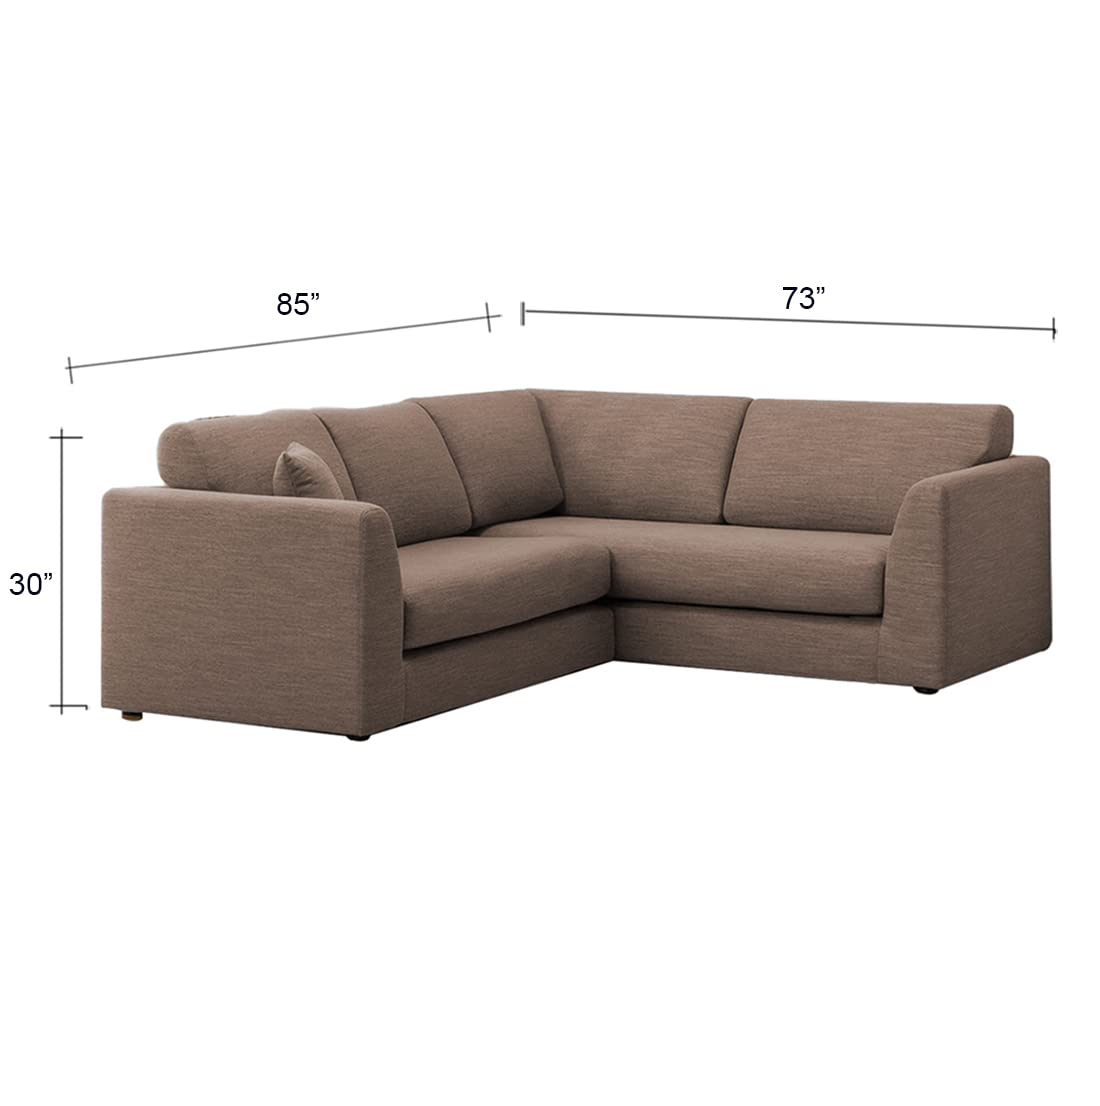 Torque India Florita 5 Seater Corner Fabric Sofa Set Furniture For Living Room | 5 Seater Fabric Sofa - Torque India